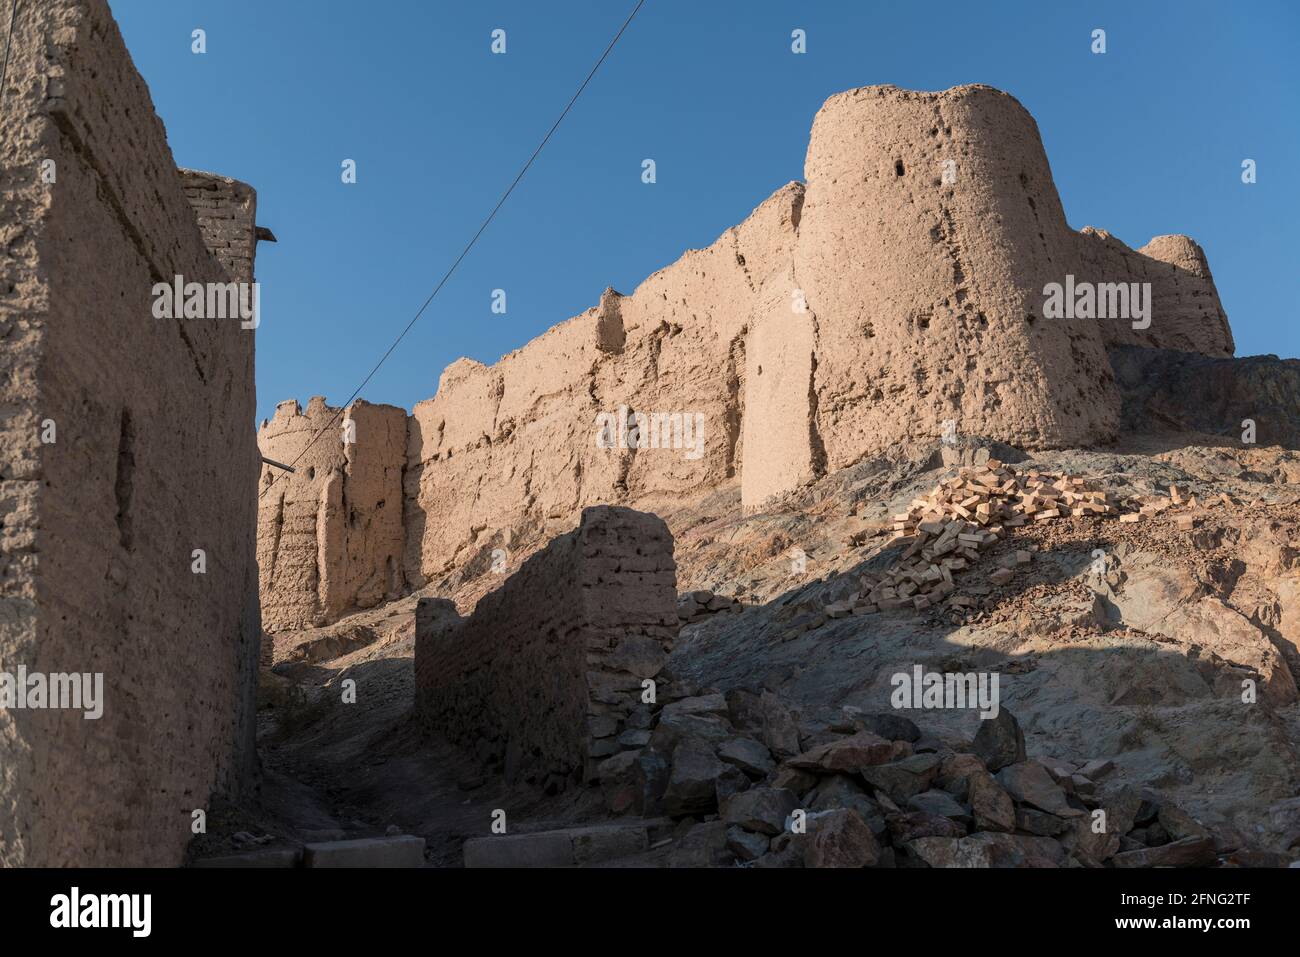 Le rovine della cittadella di Mohammadieh sulla cima di una collina, vicino alla città Foto Stock